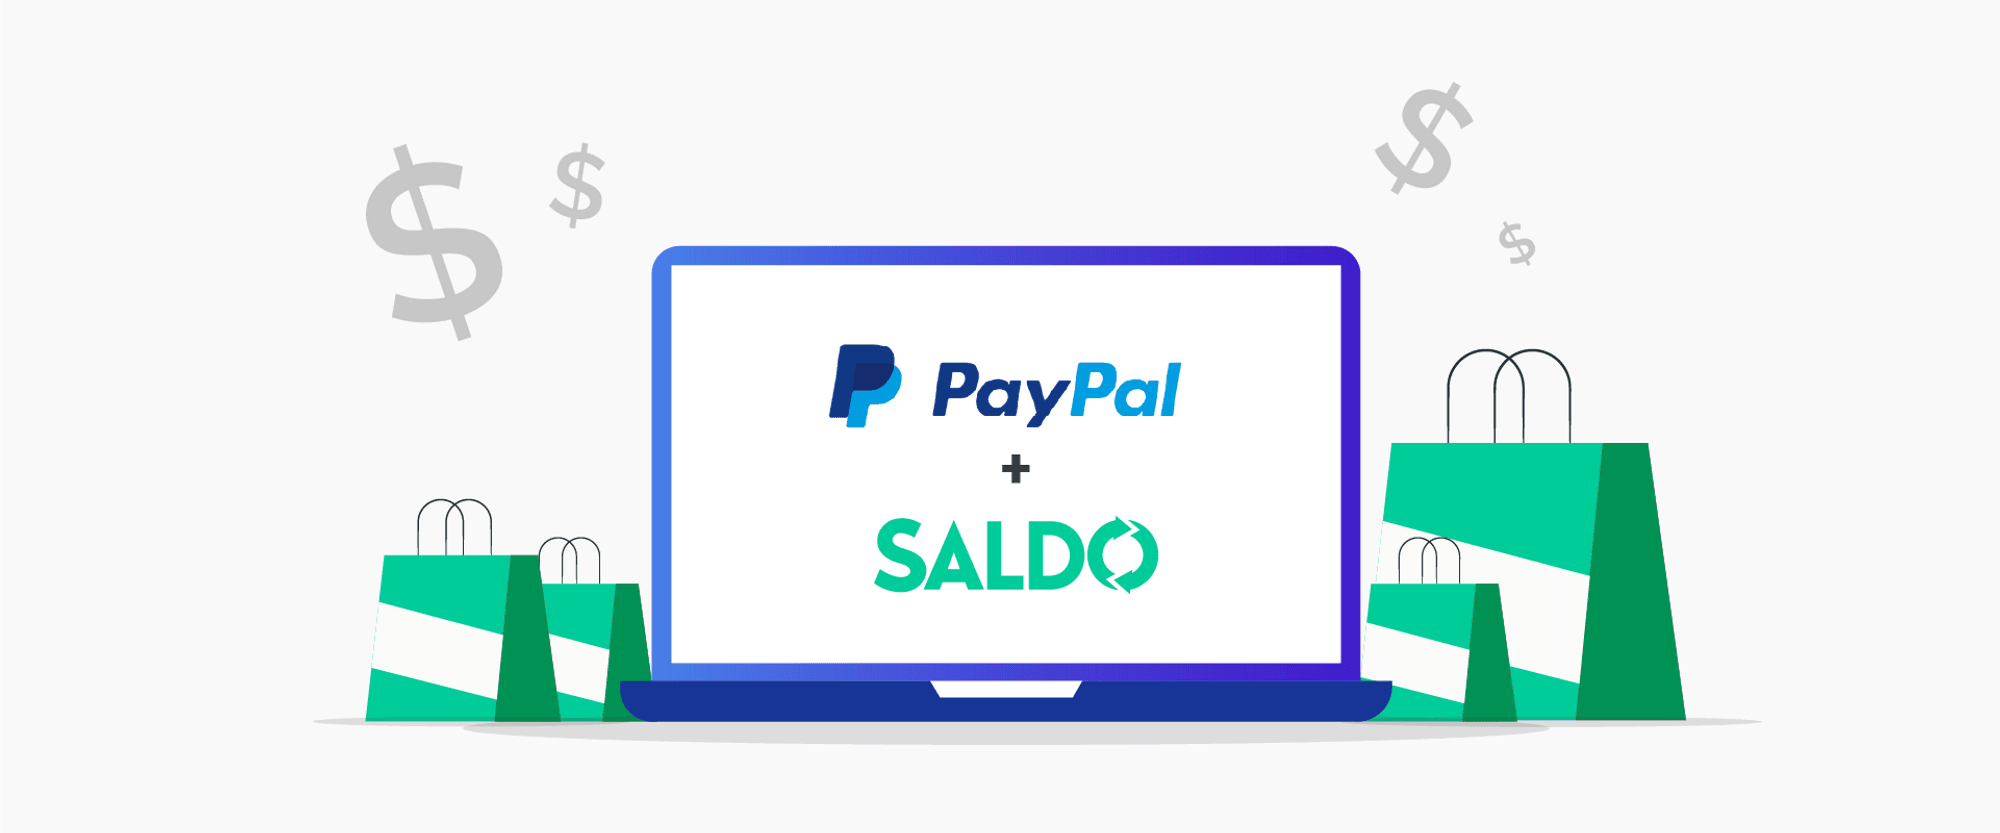 Cómo Utilizar PayPal y Saldo.com.ar en Plataformas como Uber, Tienda Mía, eBay, Zara, Fortnite, Samart Buy Glasses y Airbnb...